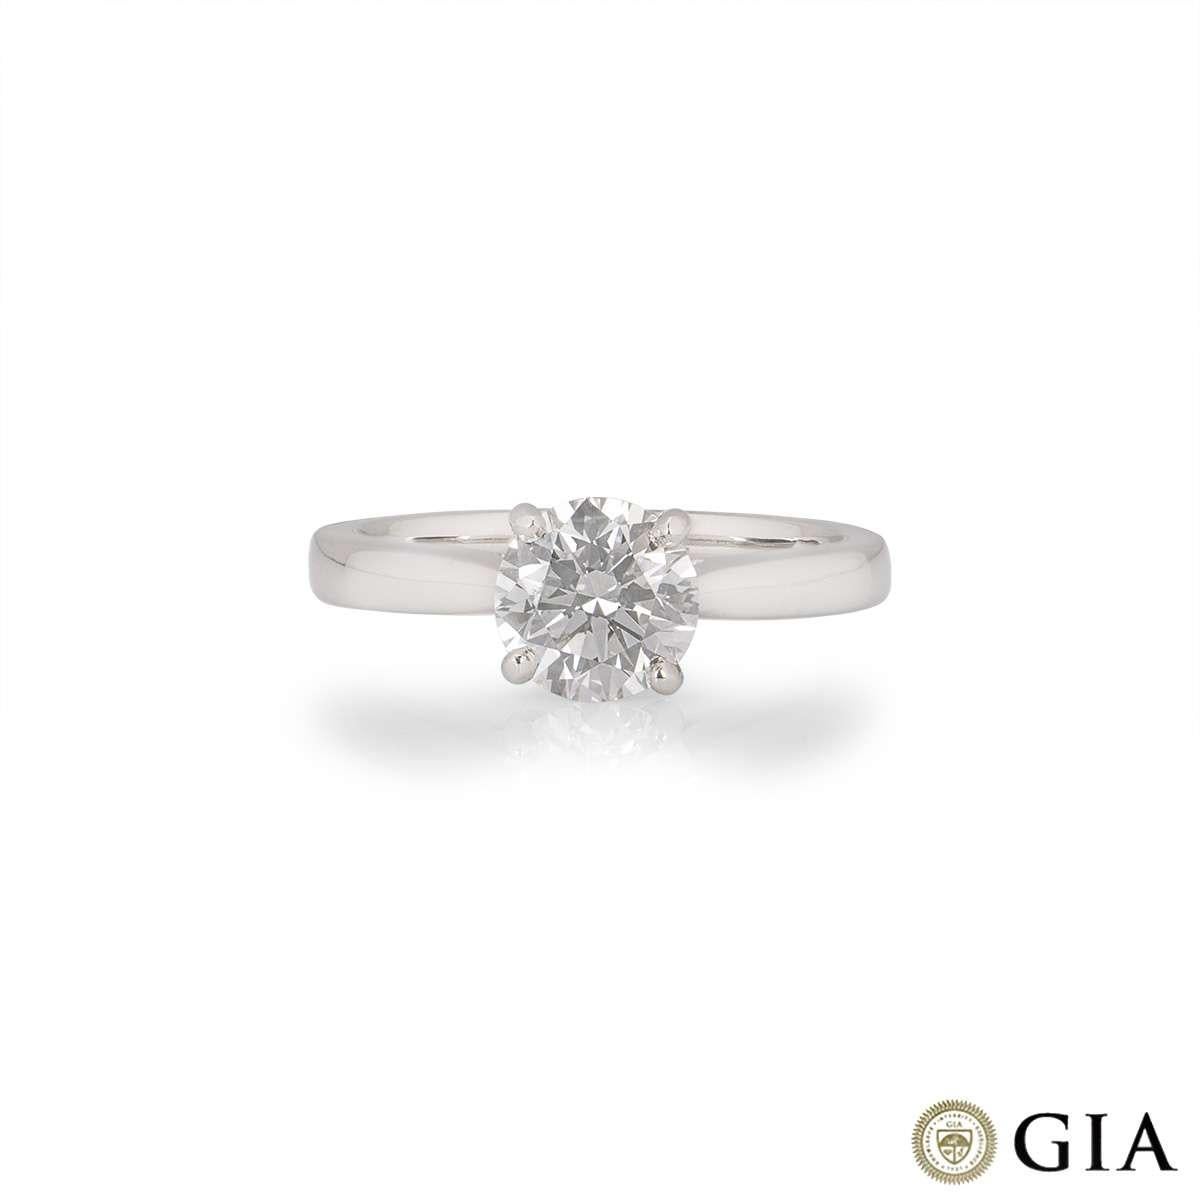 Une magnifique bague en diamant en platine. Le diamant rond de taille brillant pèse 1,30ct, est de couleur G et de pureté SI1. Le diamant obtient une excellente note pour les trois aspects de la taille, du polissage et de la symétrie - c'est ce